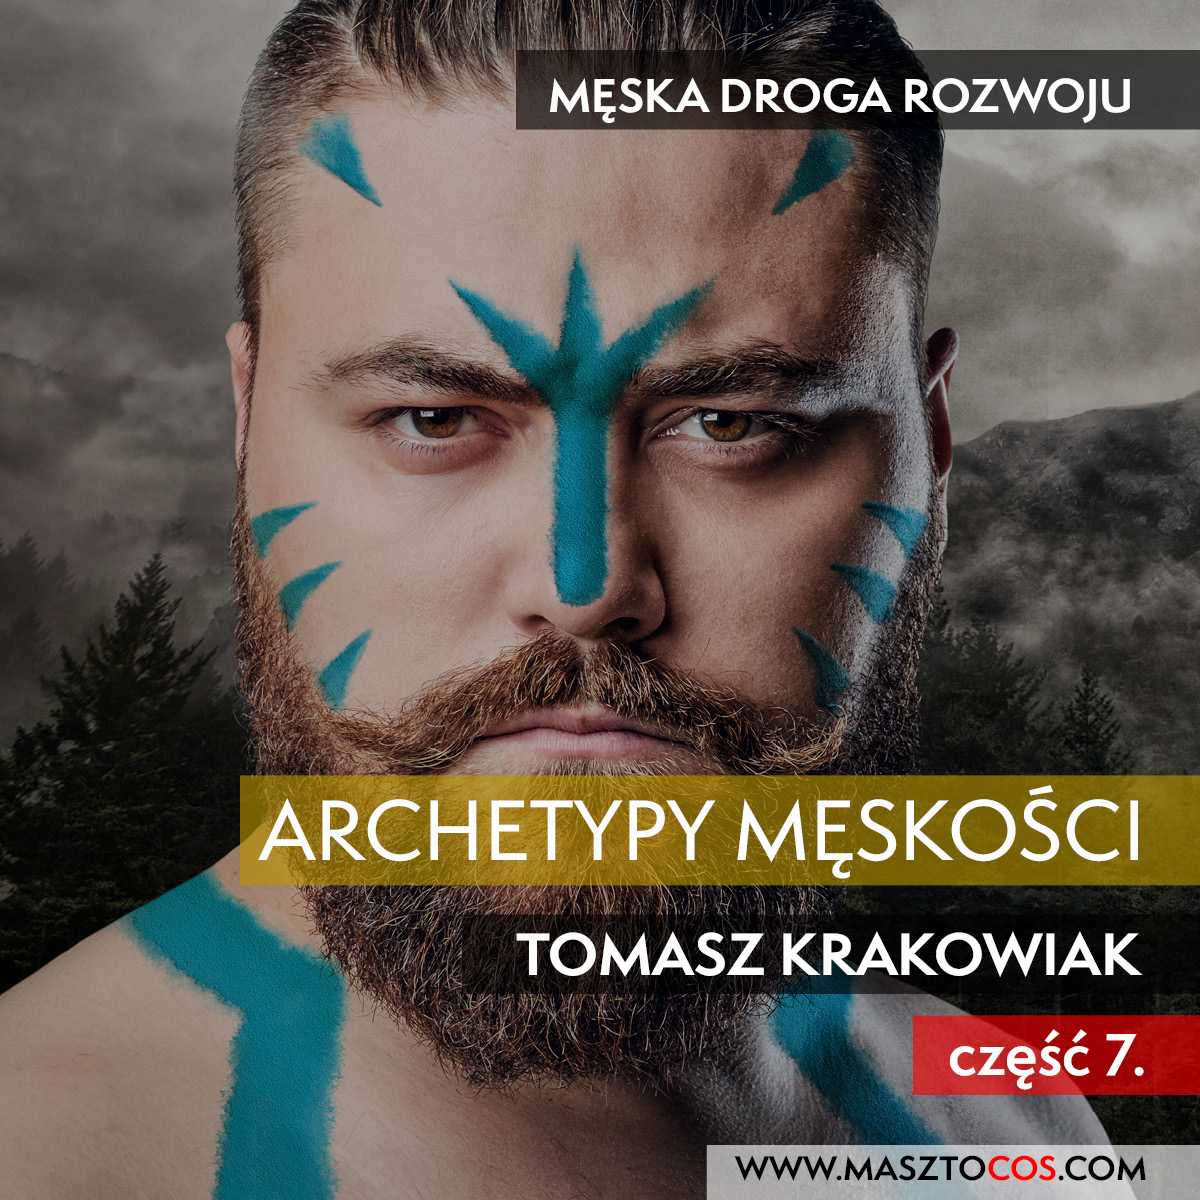 You are currently viewing Archetypy Męskości Cz. 7.